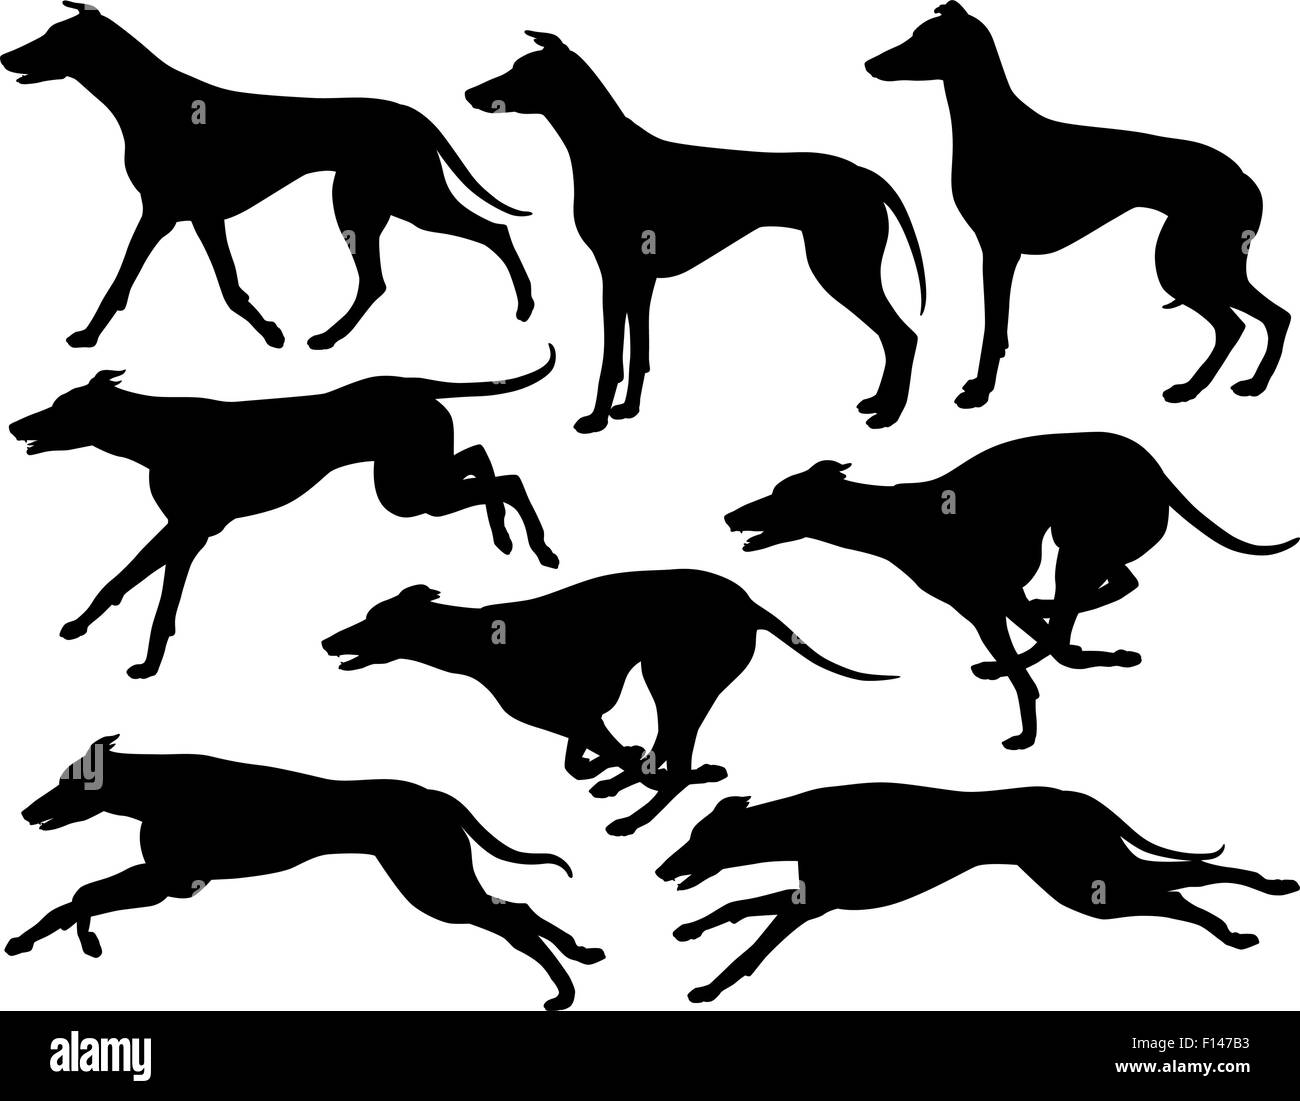 Ensemble de8 EPS vectoriel éditable silhouettes de chiens Greyhound d'exécution, l'article et le trot Illustration de Vecteur